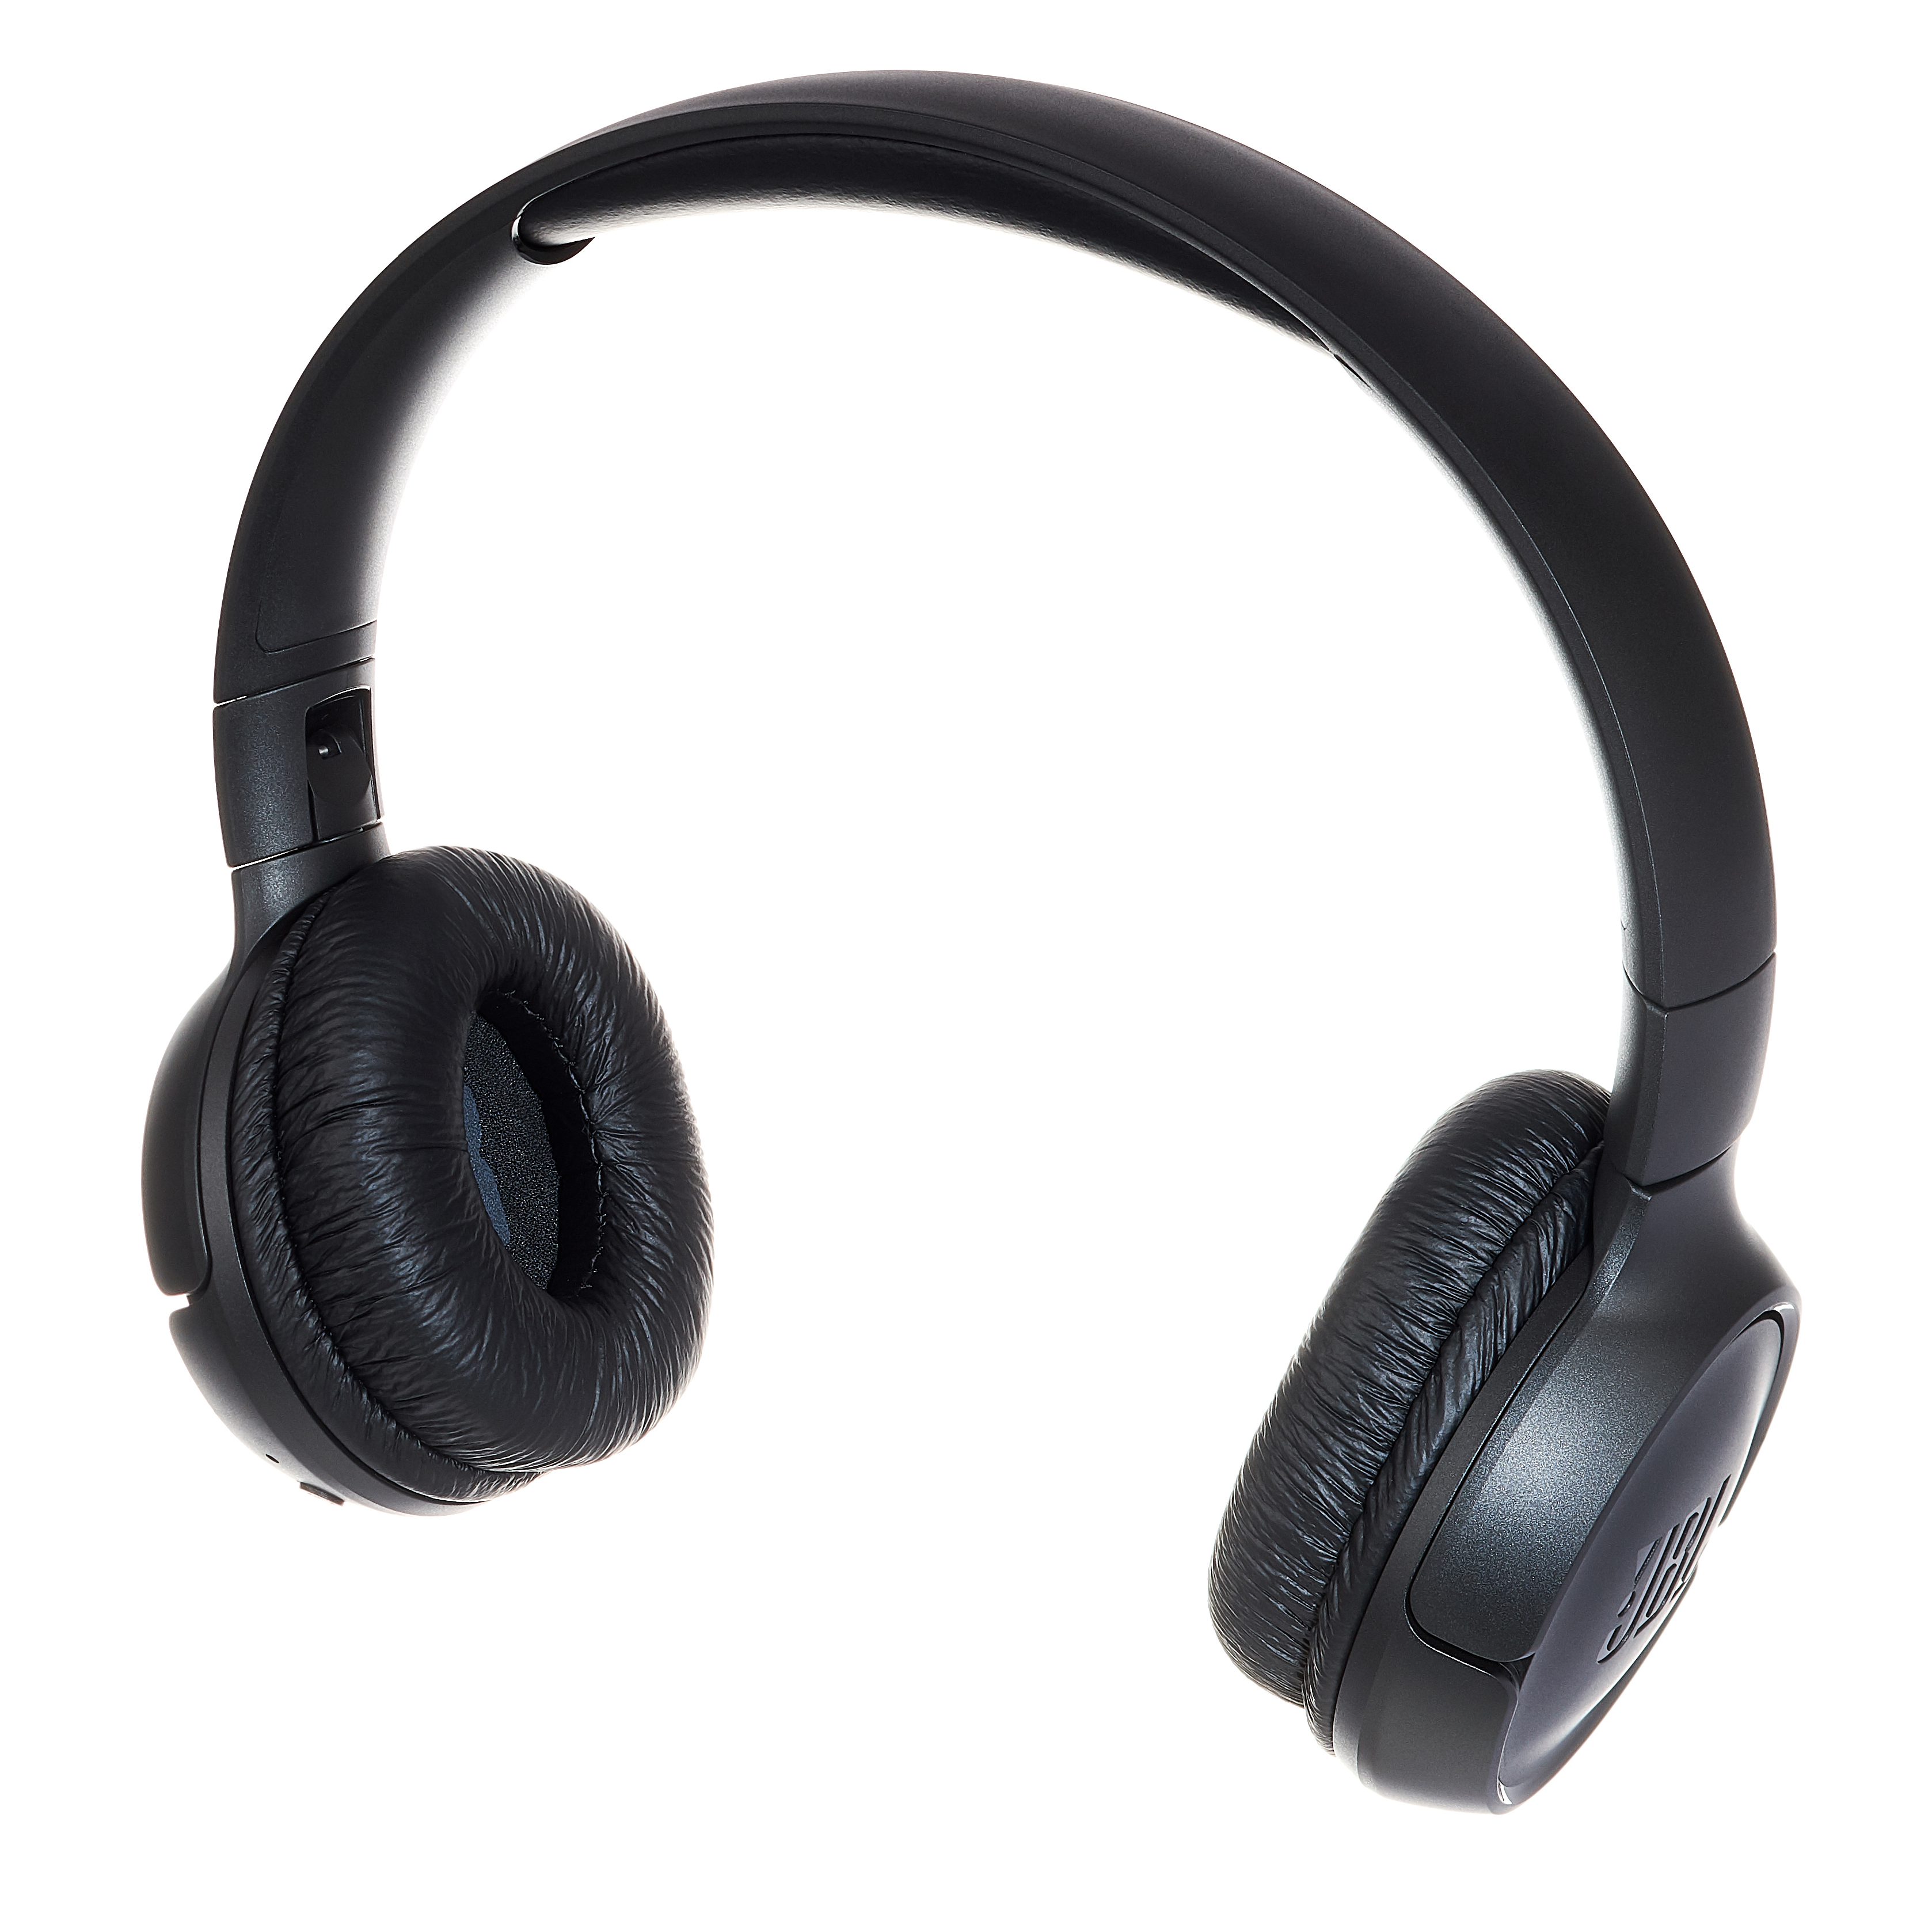  JBL Tune 500BT Wireless On-Ear Headphones - Black